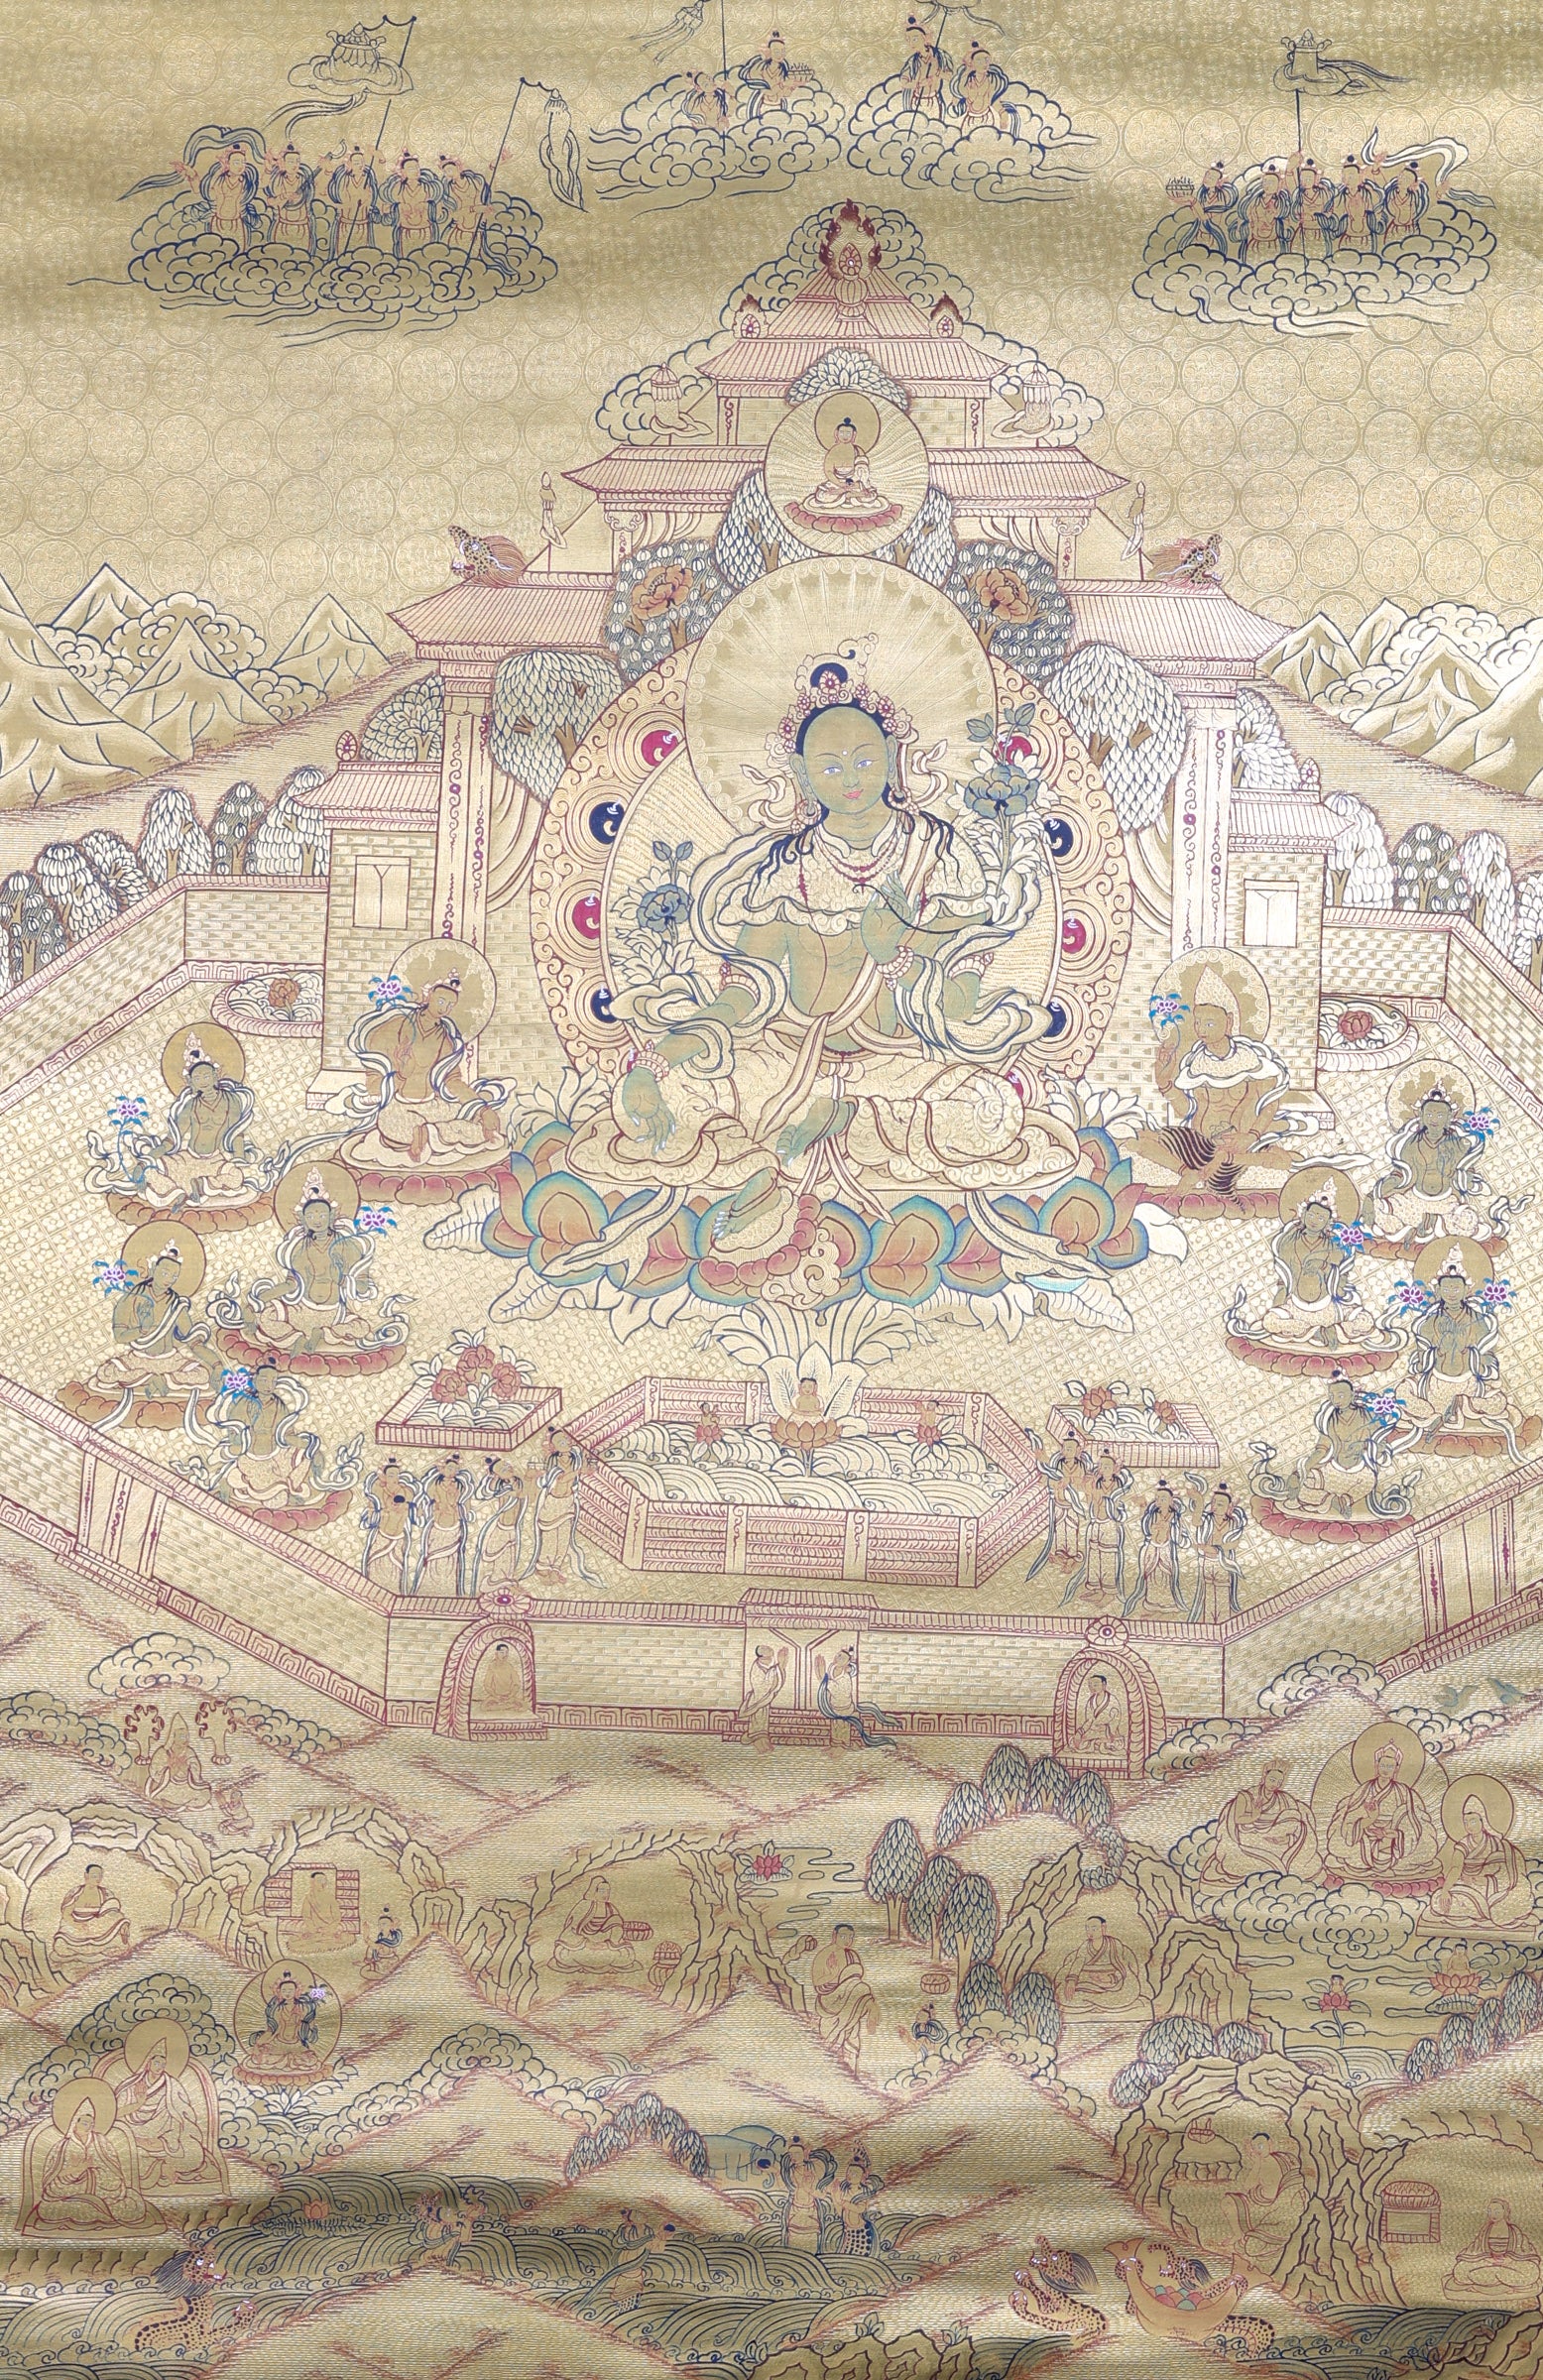 Green Tara Thangka Painting for rituals, meditations, and prayers.